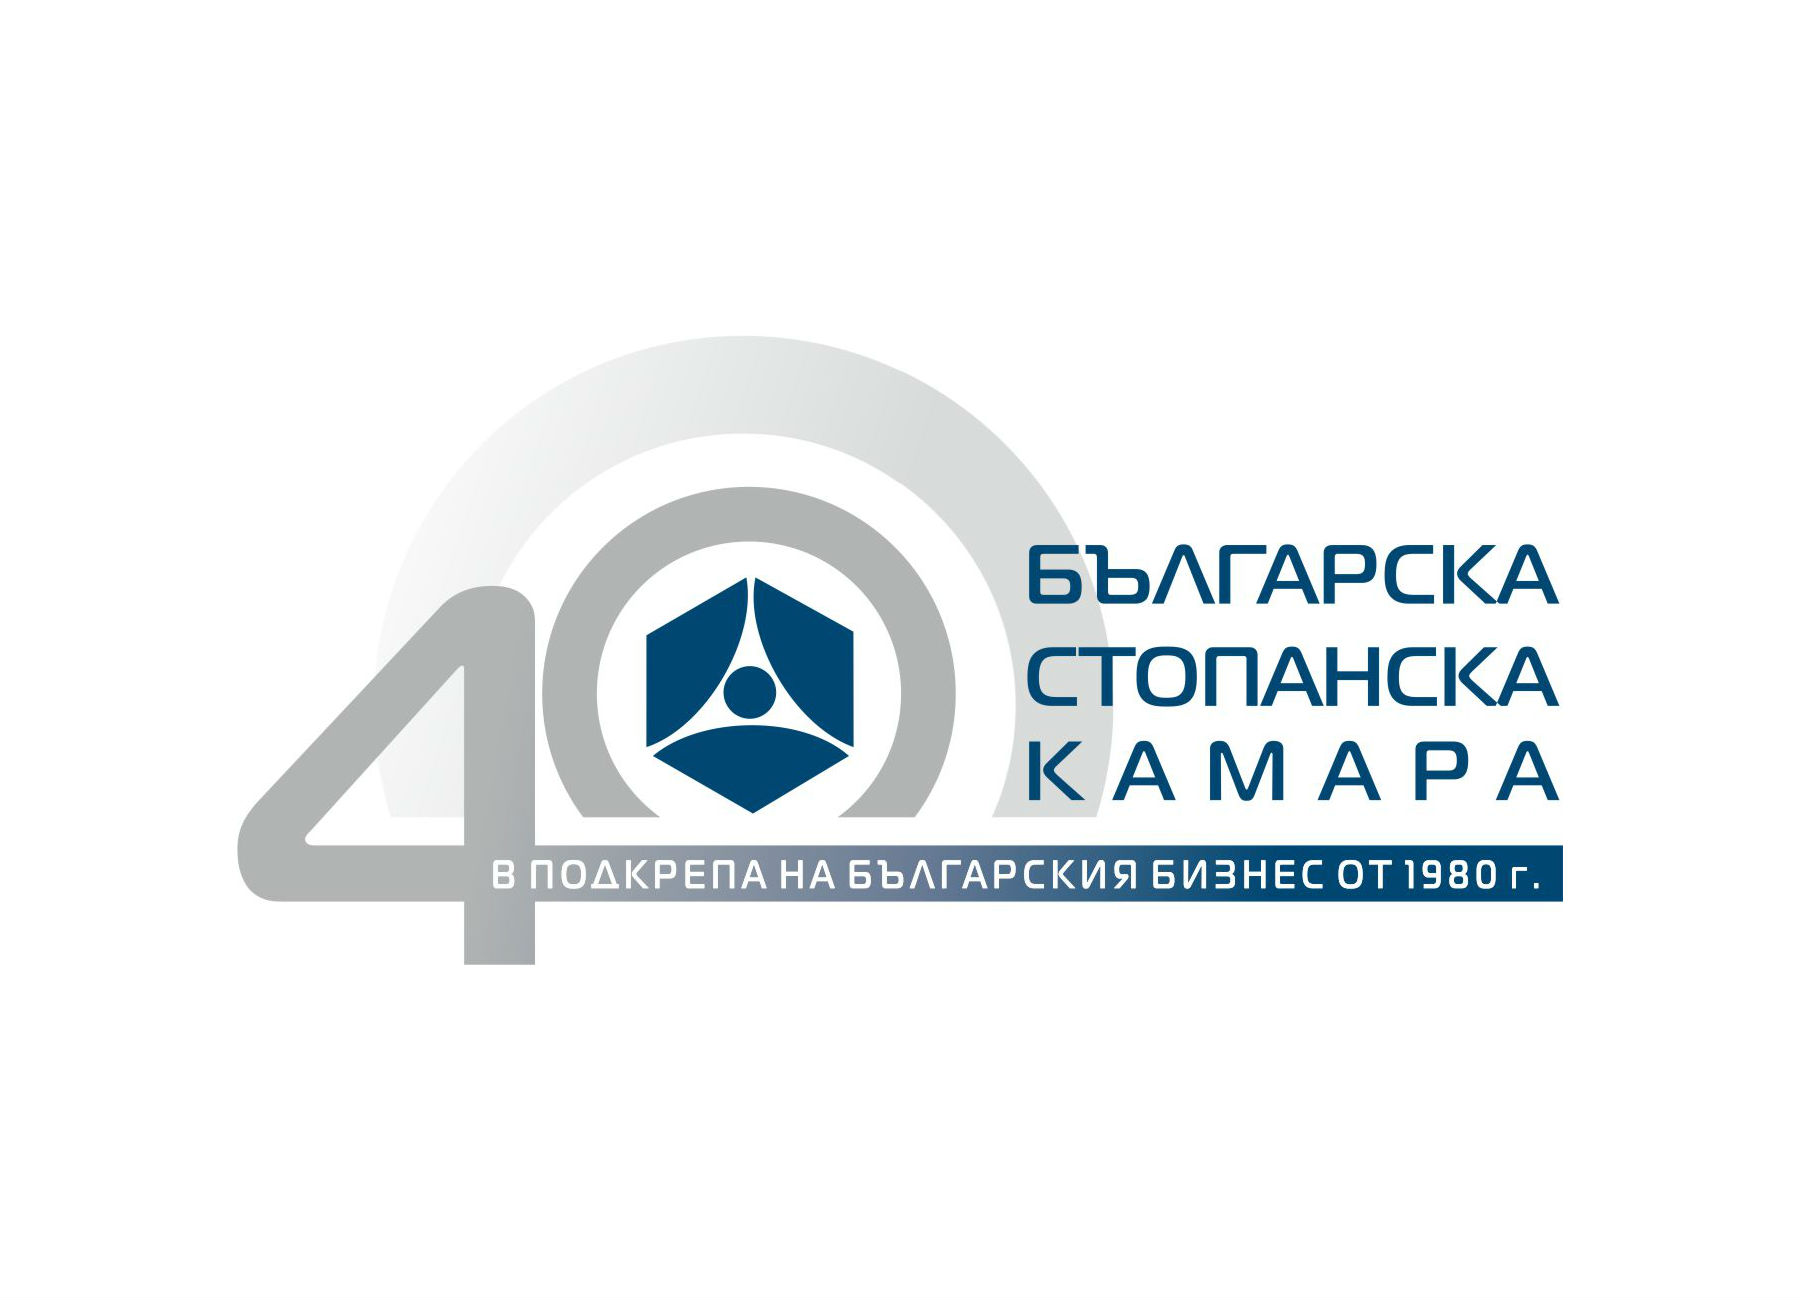 Българската стопанска камара отбелязва 40 години от своето учредяване